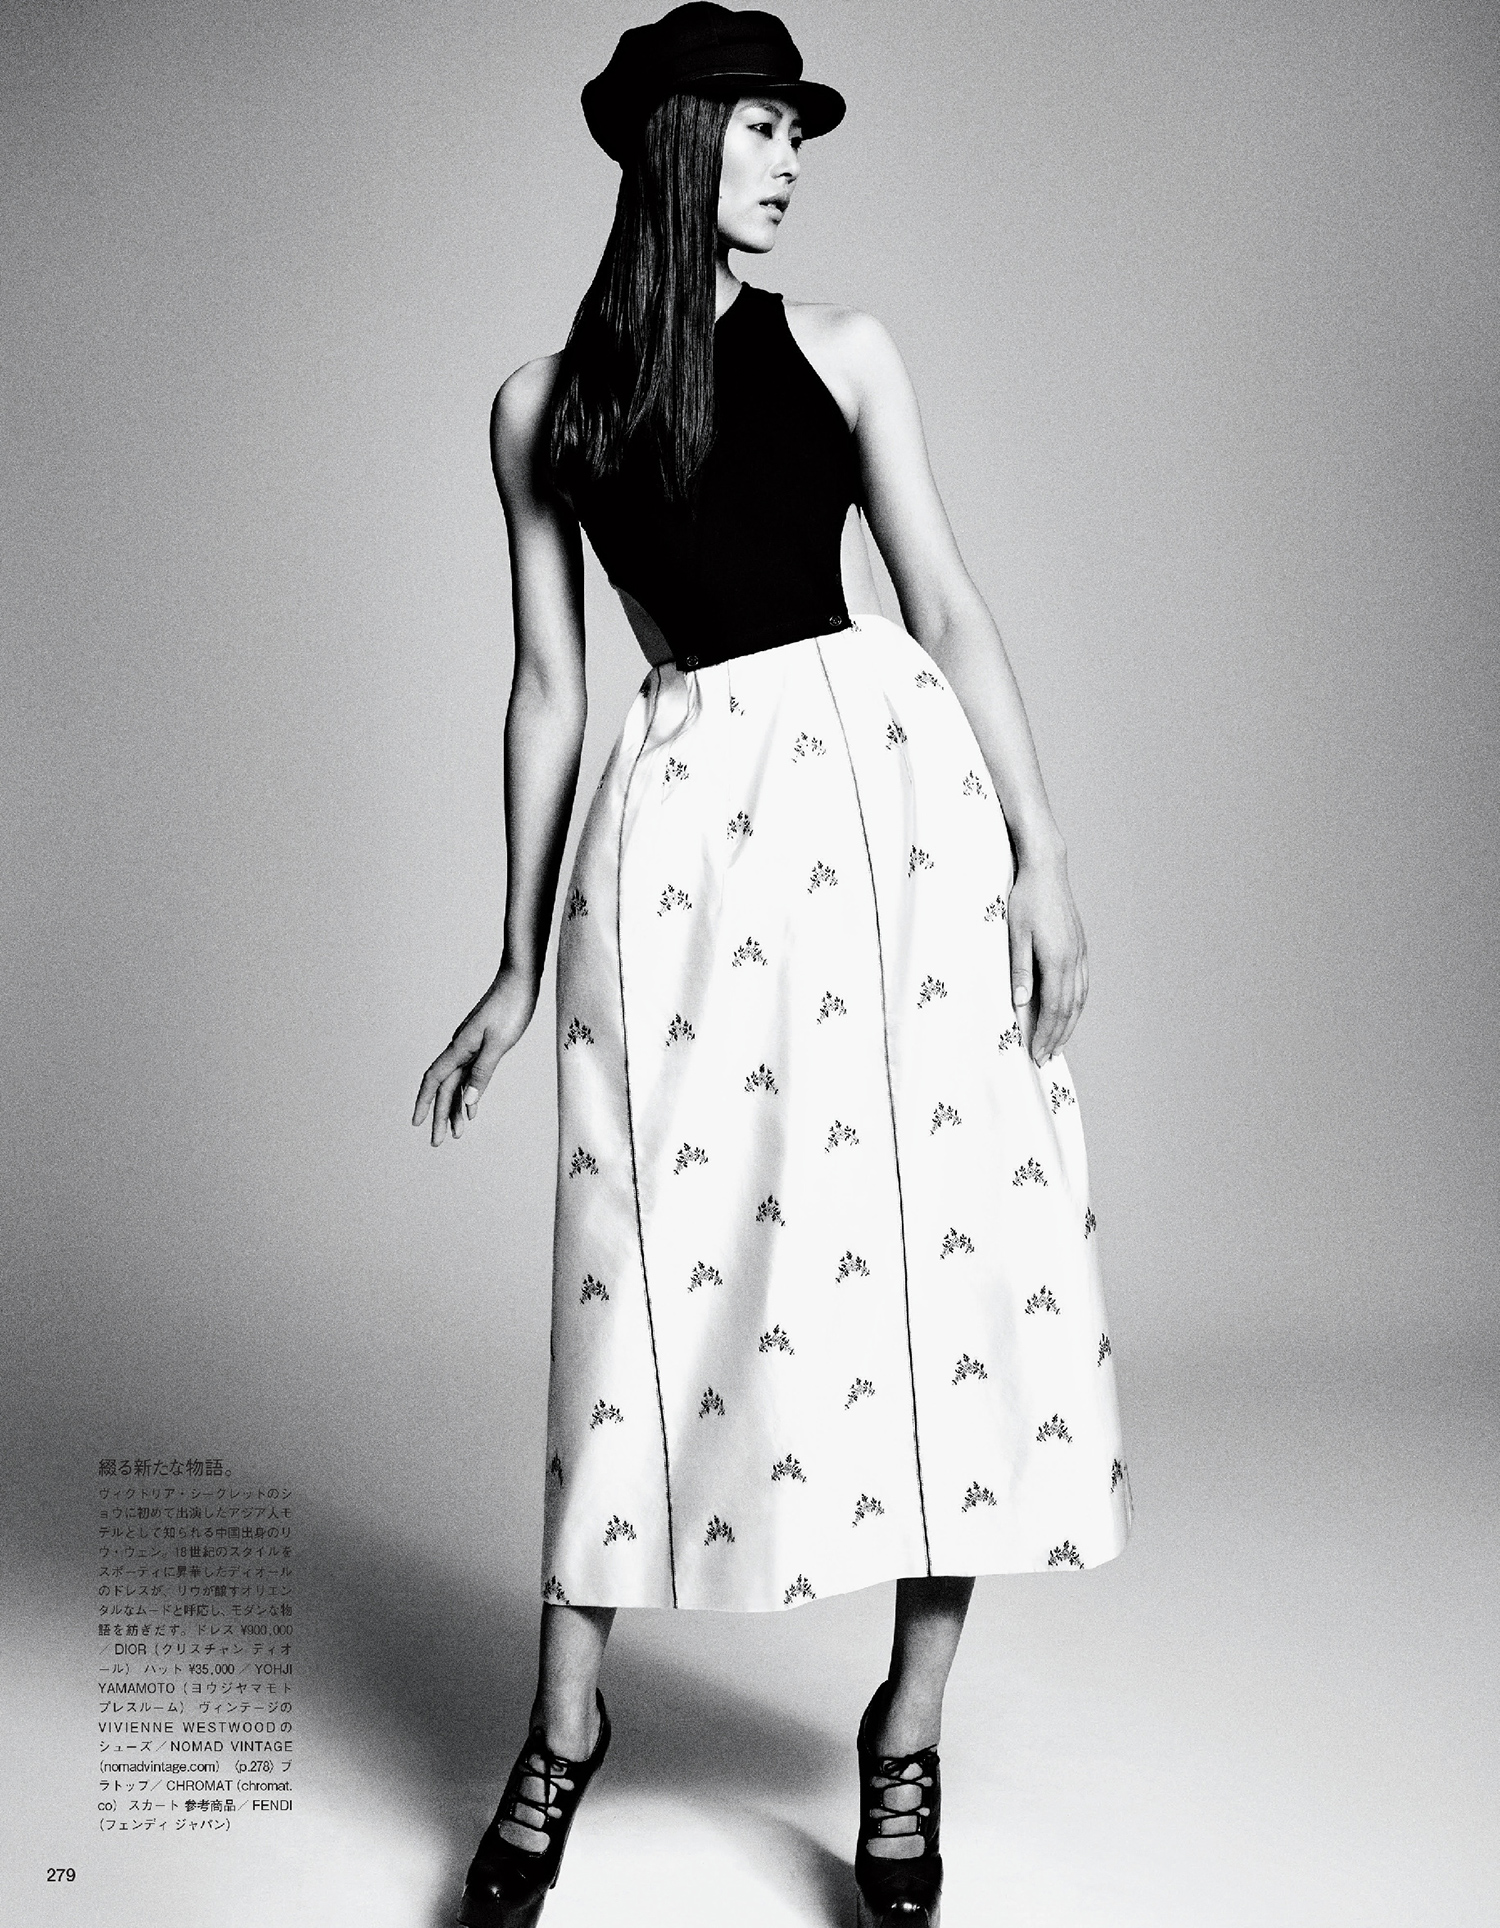 Giovanna-Battaglia-Vogue-Japan-March-2015-Digital-Generation-15.jpg